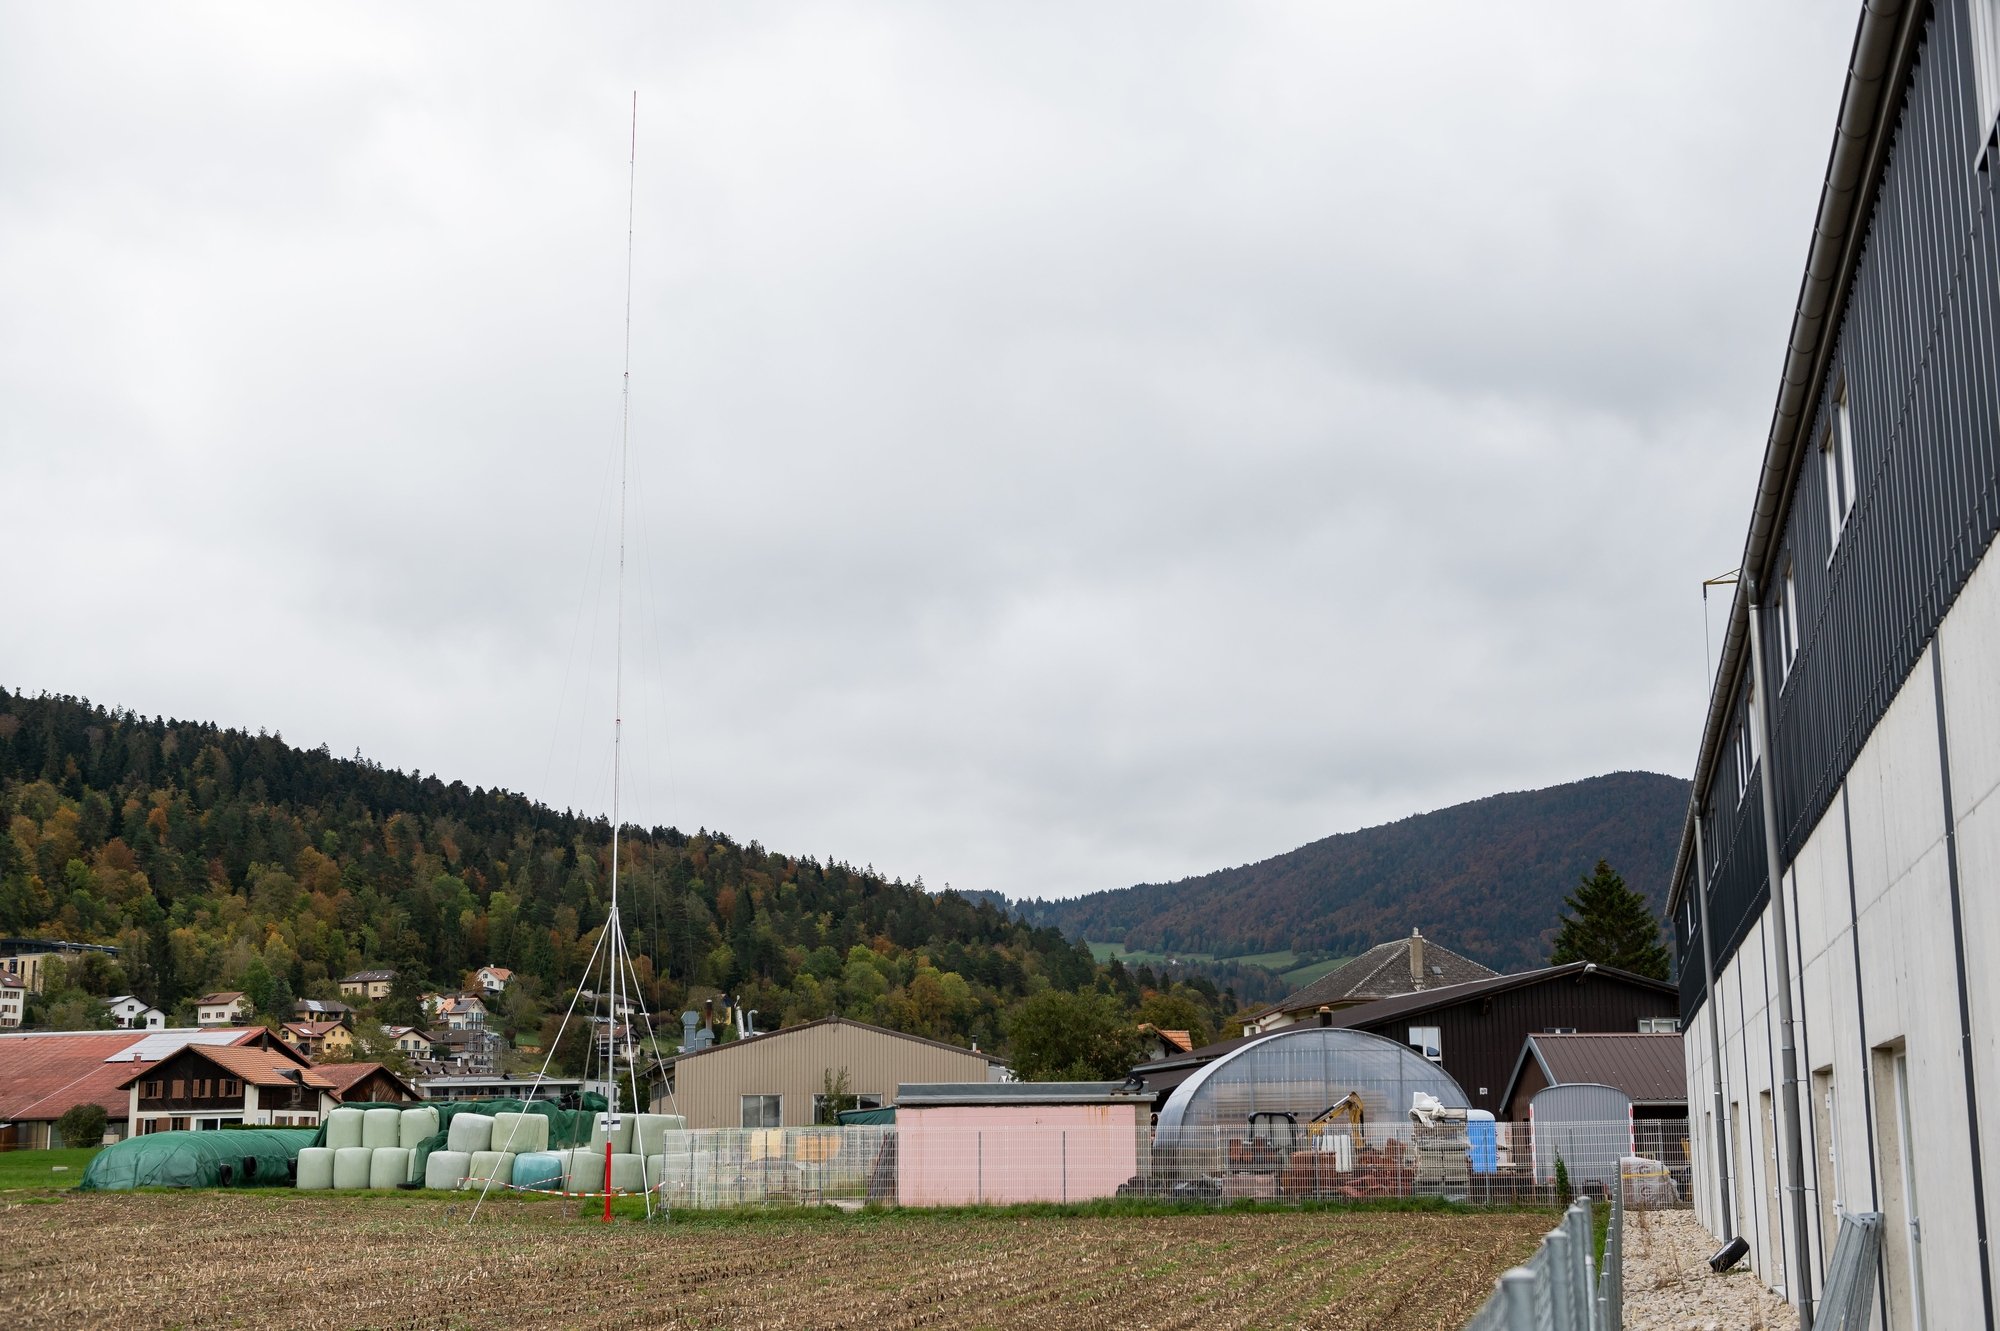 Plus de 500 personnes se sont opposées à l'antenne 5G, prévue à l'entrée ouest du village de Dombresson.